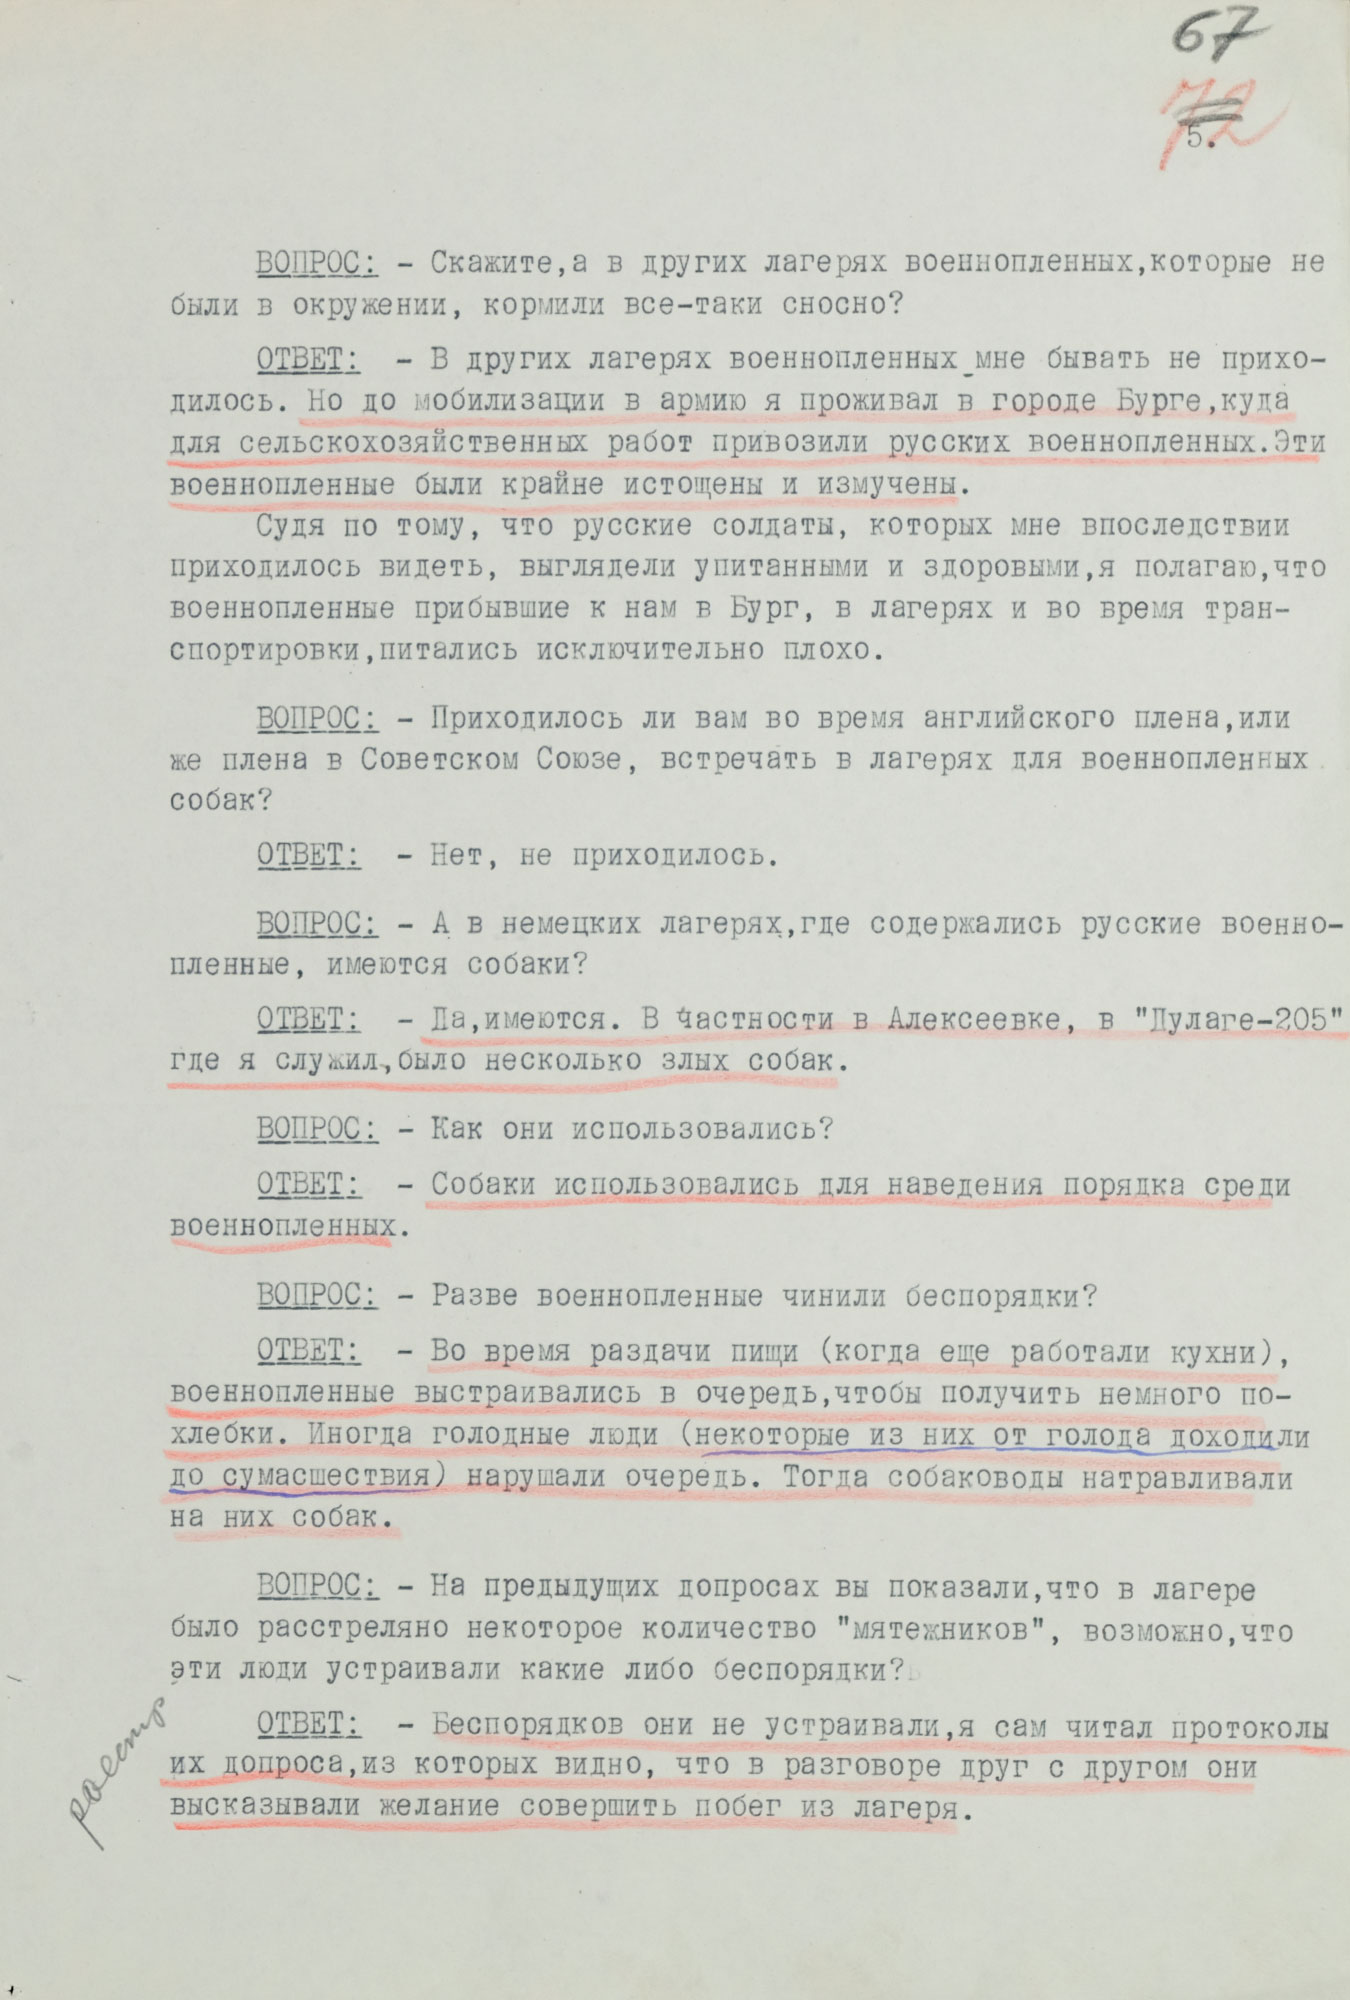 Протокол допроса военнопленного обер-лейтенанта германской армии МЕДЕРА Отто, адъютанта коменданта «Дулаг-205». 27 августа 1943 г. Страница 5